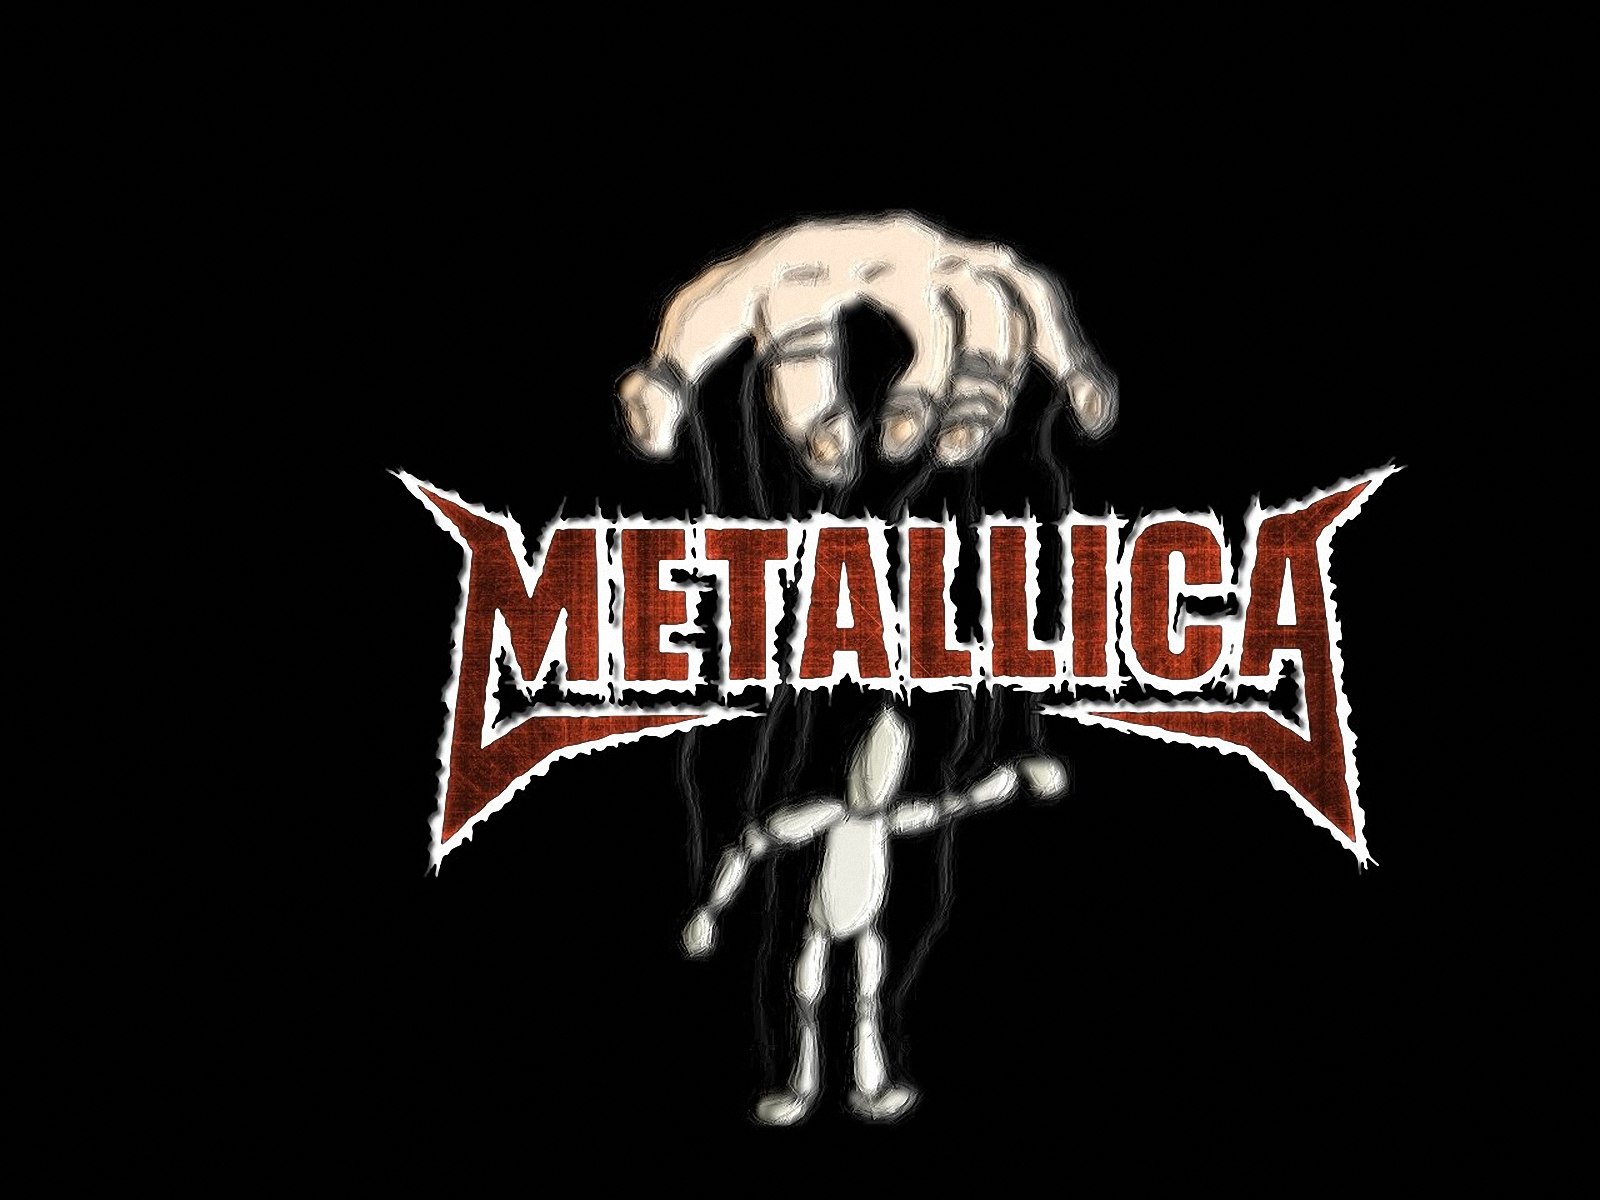 Hãy tải ngay những hình nền Metallica đẹp nhất cho điện thoại của bạn để cảm nhận sức mạnh của ban nhạc Heavy Metal này! Được thiết kế với chất lượng cao và hình ảnh đầy mạnh mẽ, những bộ hình này chắc chắn sẽ làm bạn phấn khích và thỏa mãn đam mê âm nhạc của mình. 